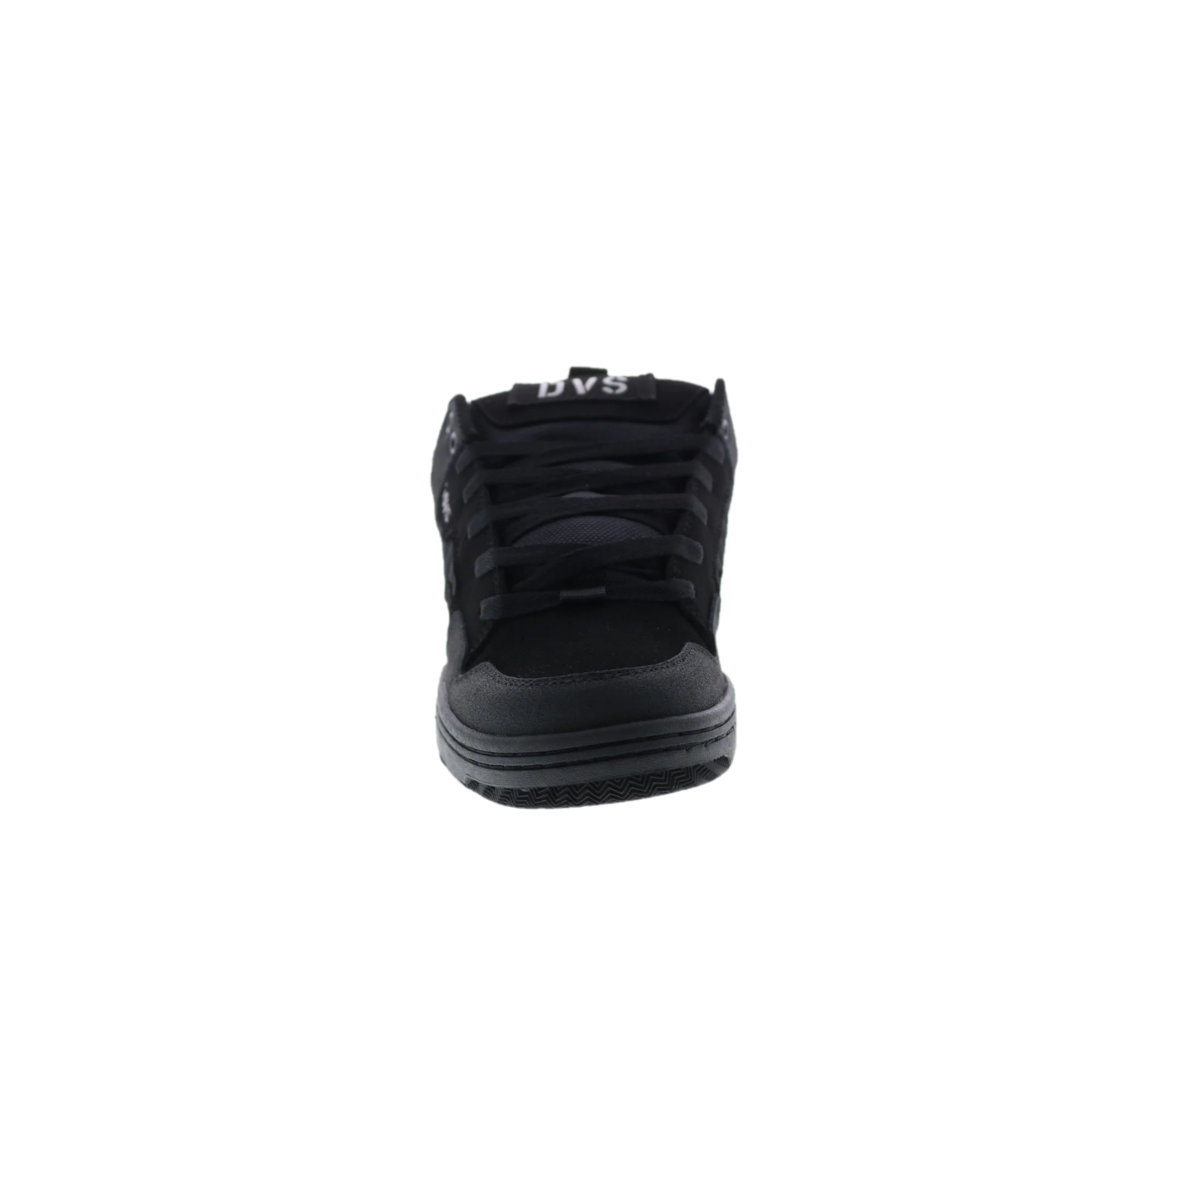 DVS F0000278016 ENDURO 125 MN'S (Medium) Black/Charcoal Leather & Mesh Skate Shoes